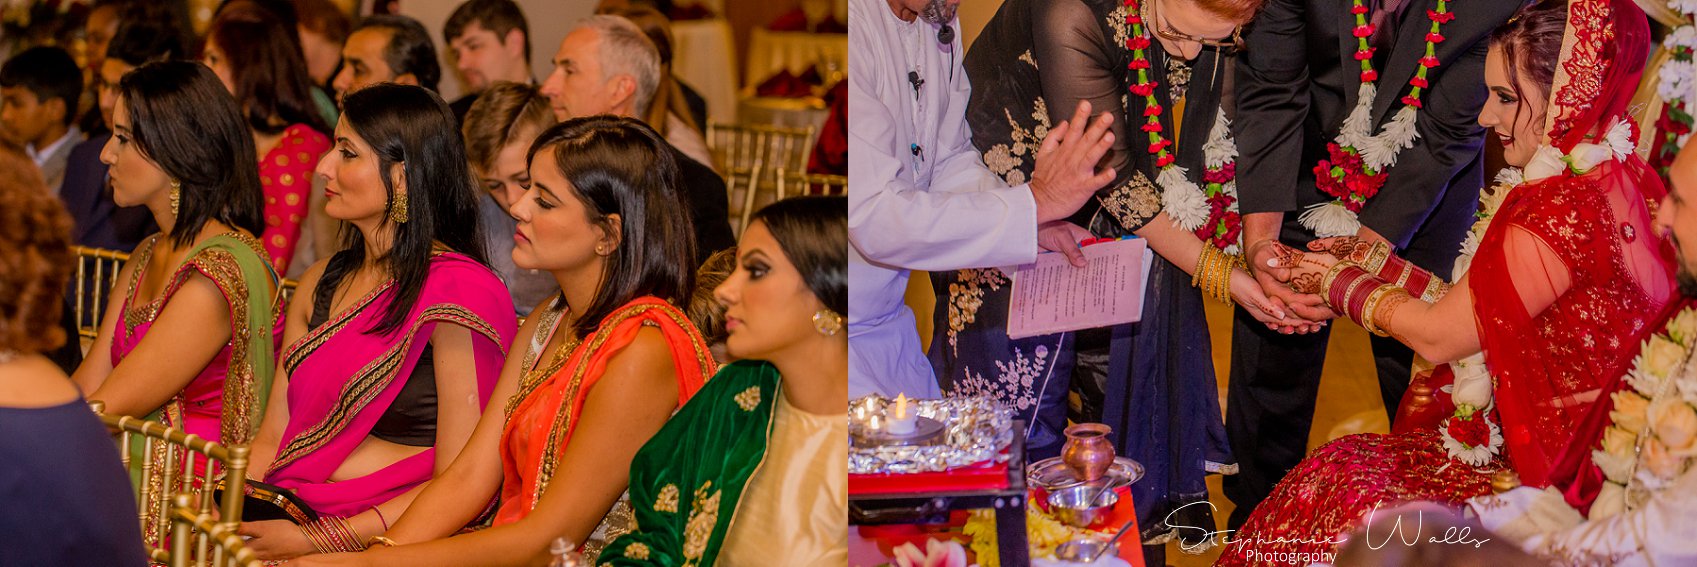 Kaushik 228 Snohomish Fusion Indian Wedding With Megan and Mo